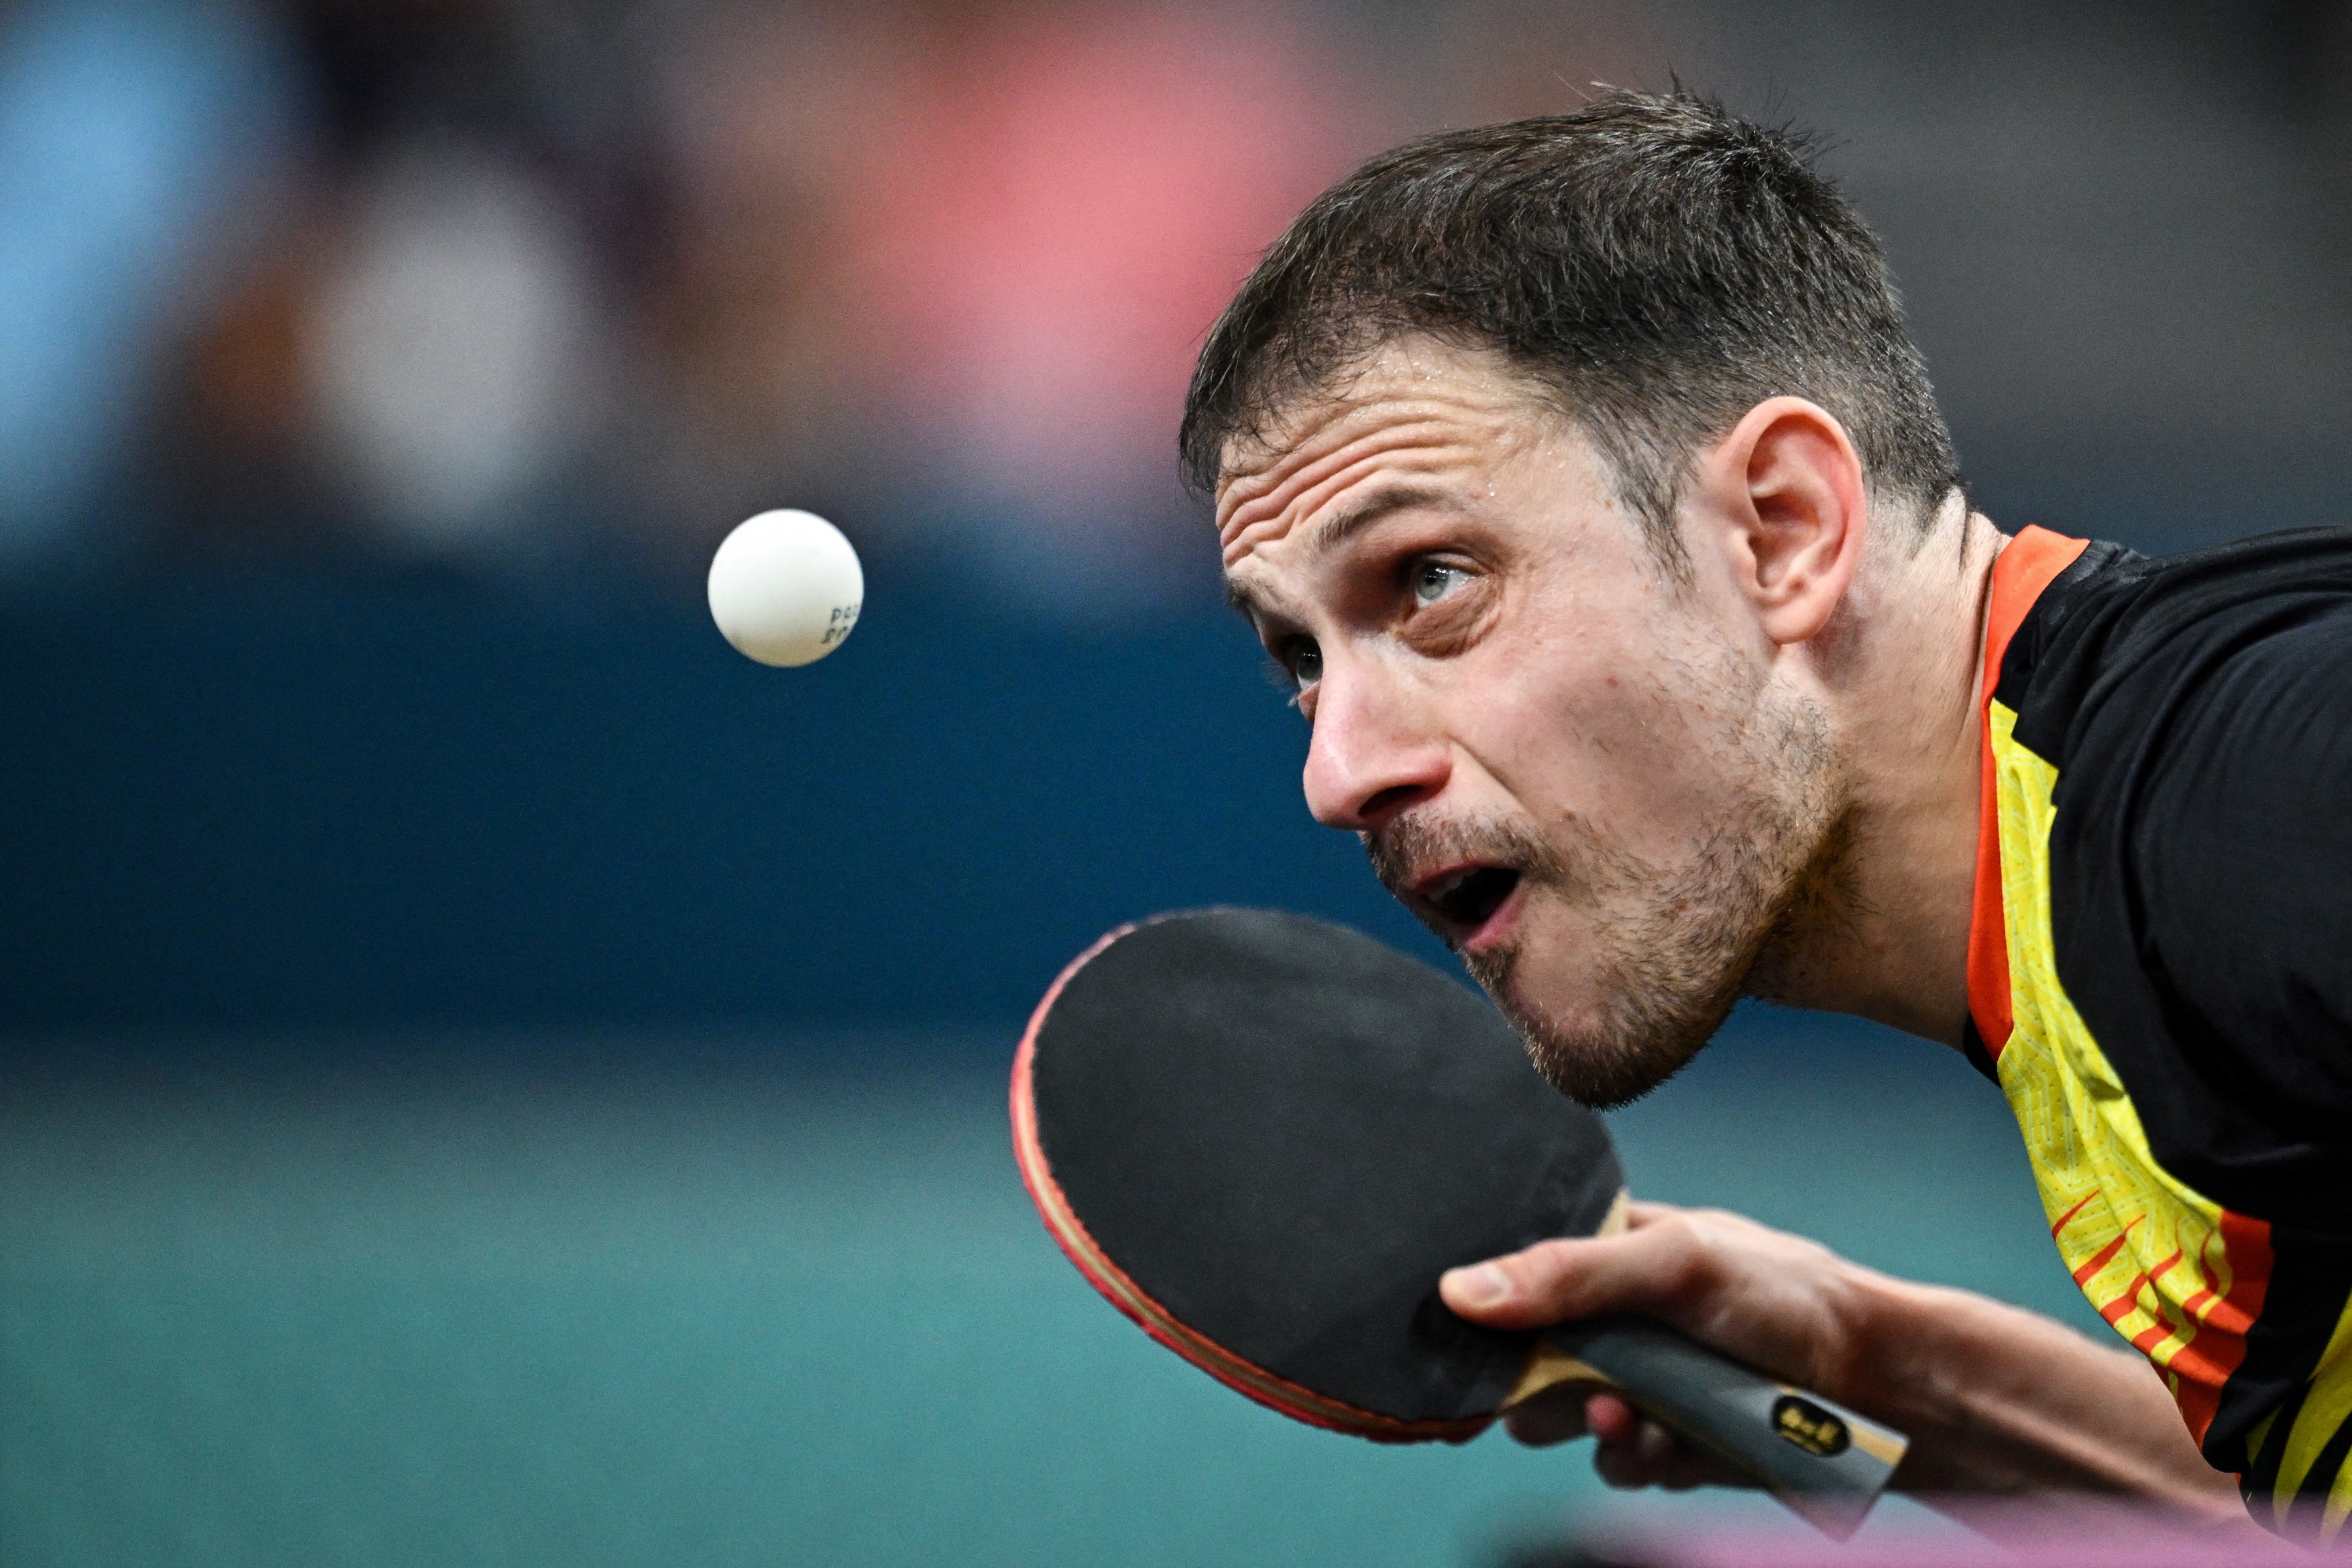 Ovidiu Ionescu a fost învins în primul tur la tenis de masă în proba de simplu, la Jocurile Olimpice